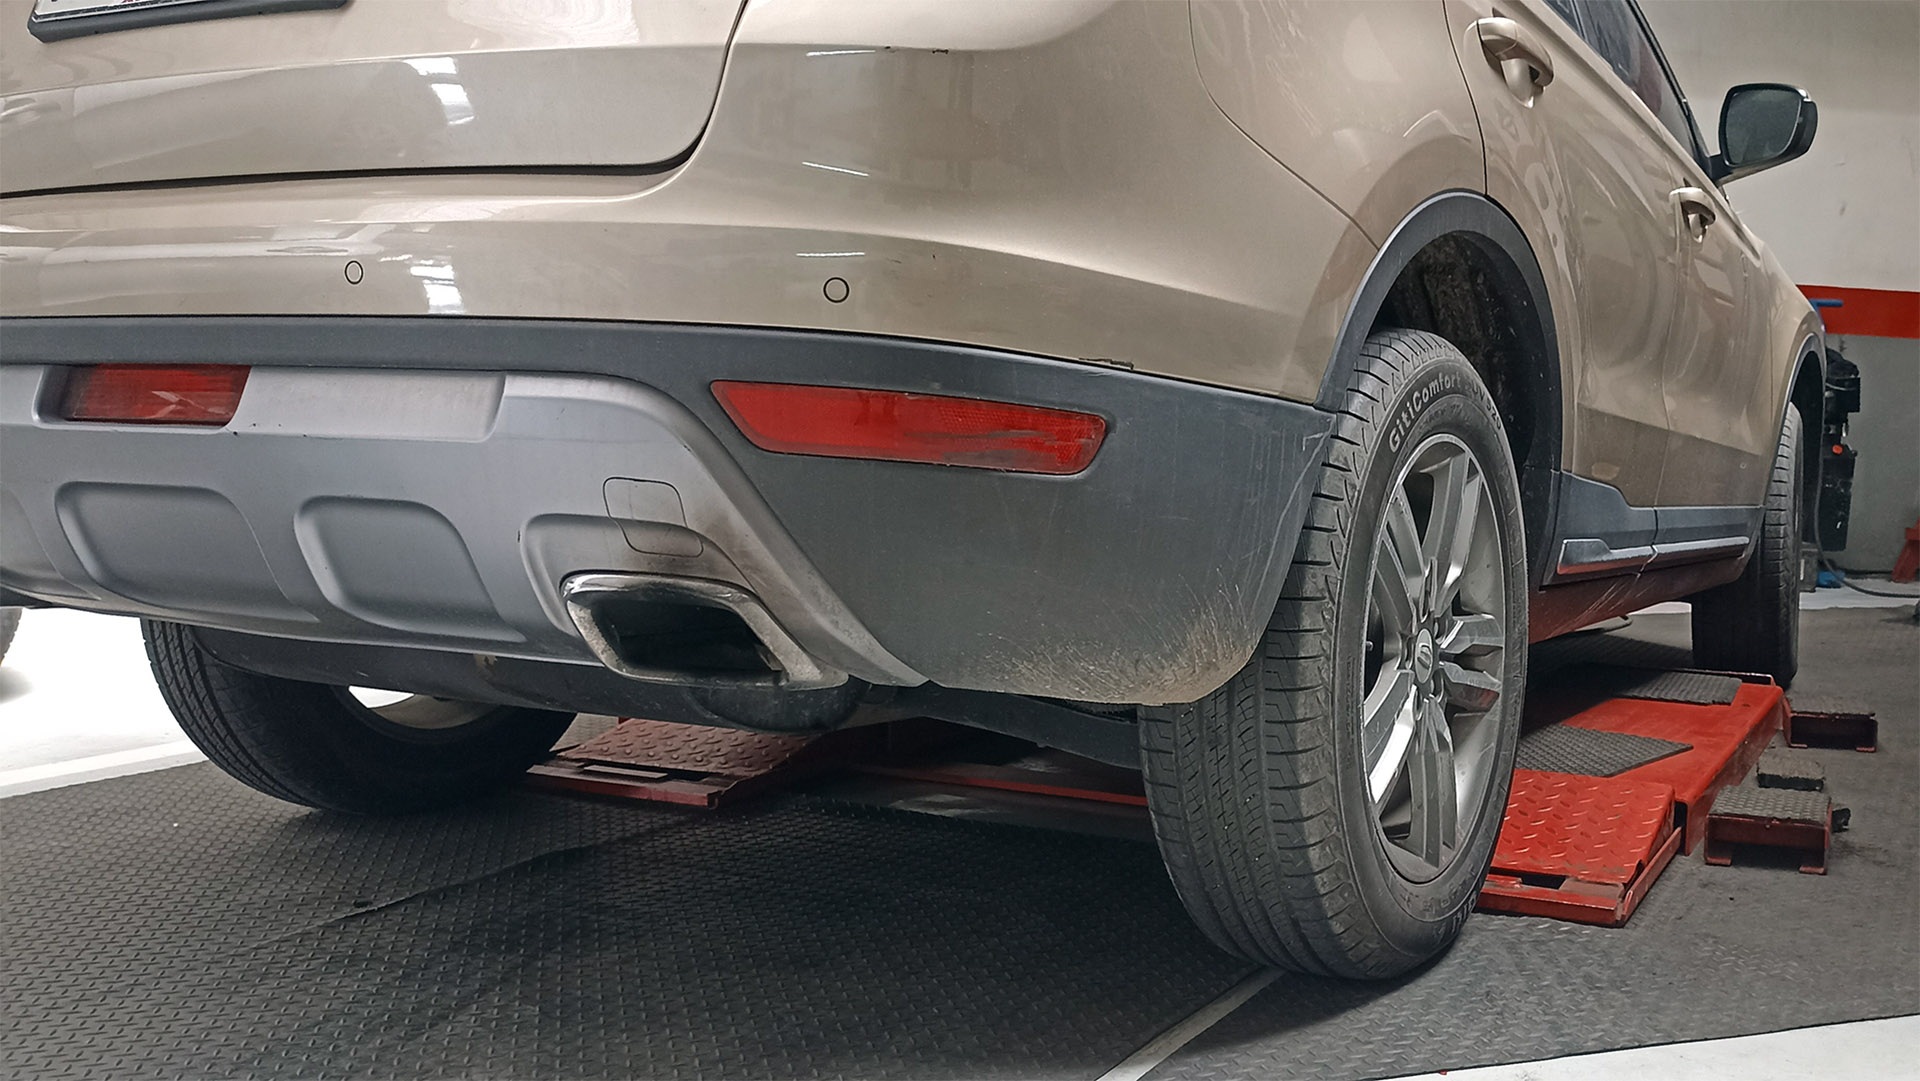 El punto de contacto del auto con el piso son los cuatro neumáticos. Se debe revisar su desgaste, presión y alineación. También de la rueda de auxilio